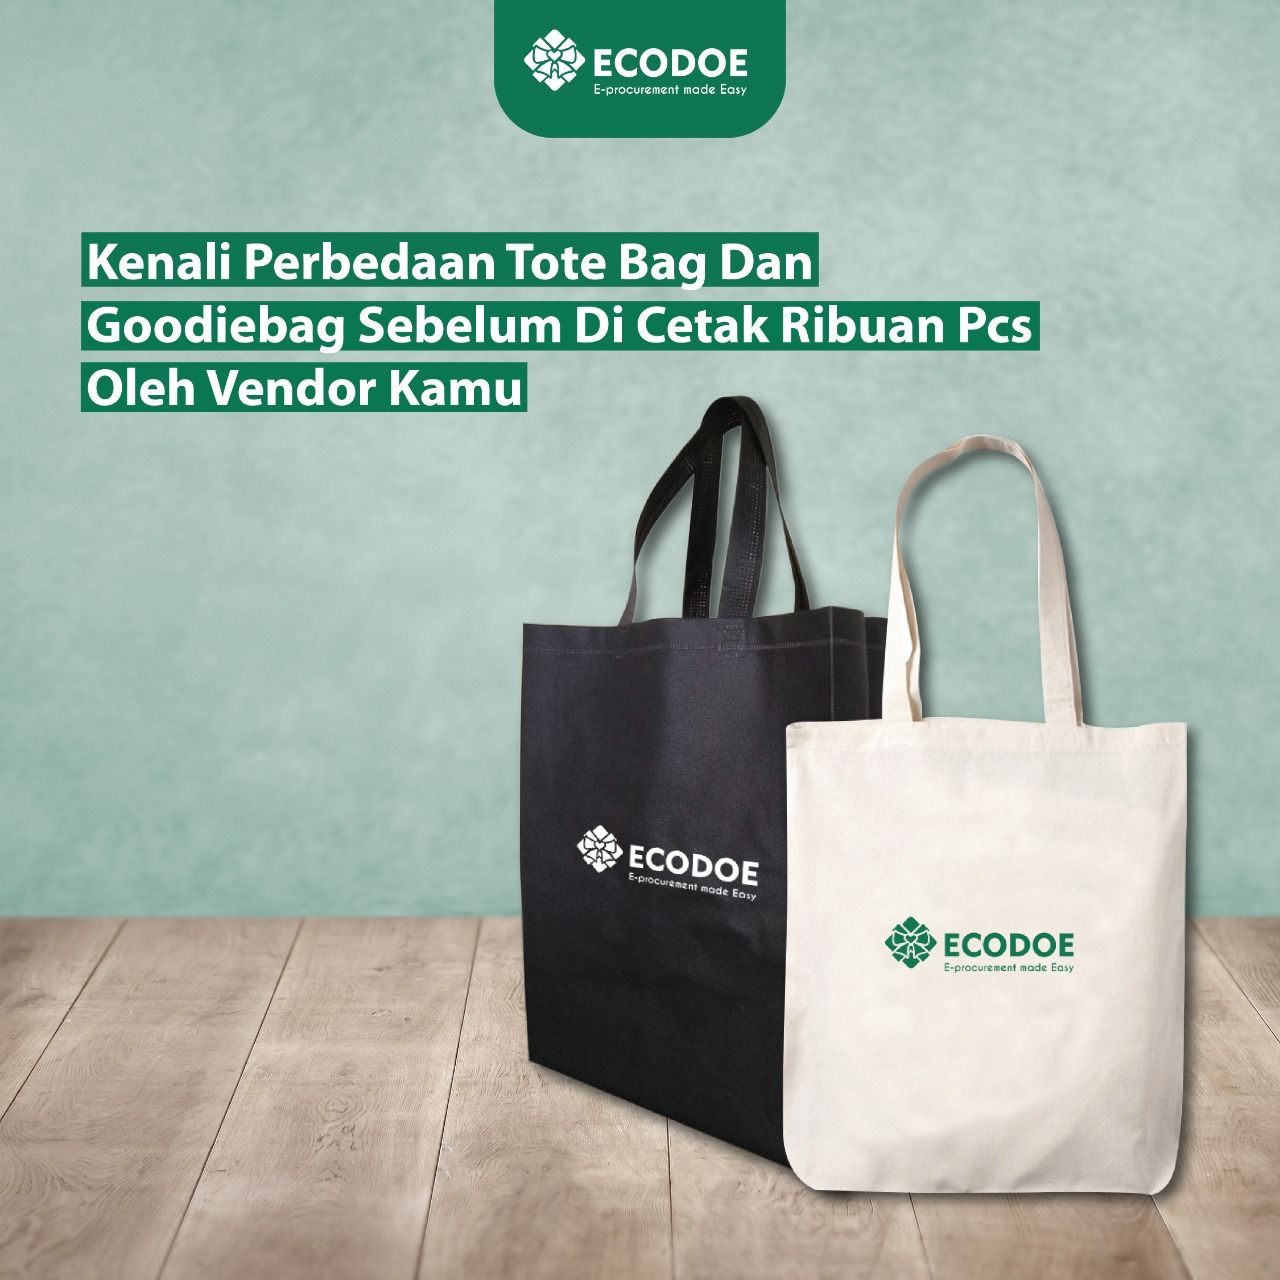 Kenali Perbedaan Tote Bag Dan Goodiebag untuk Souvenir Perusahaan Anda!